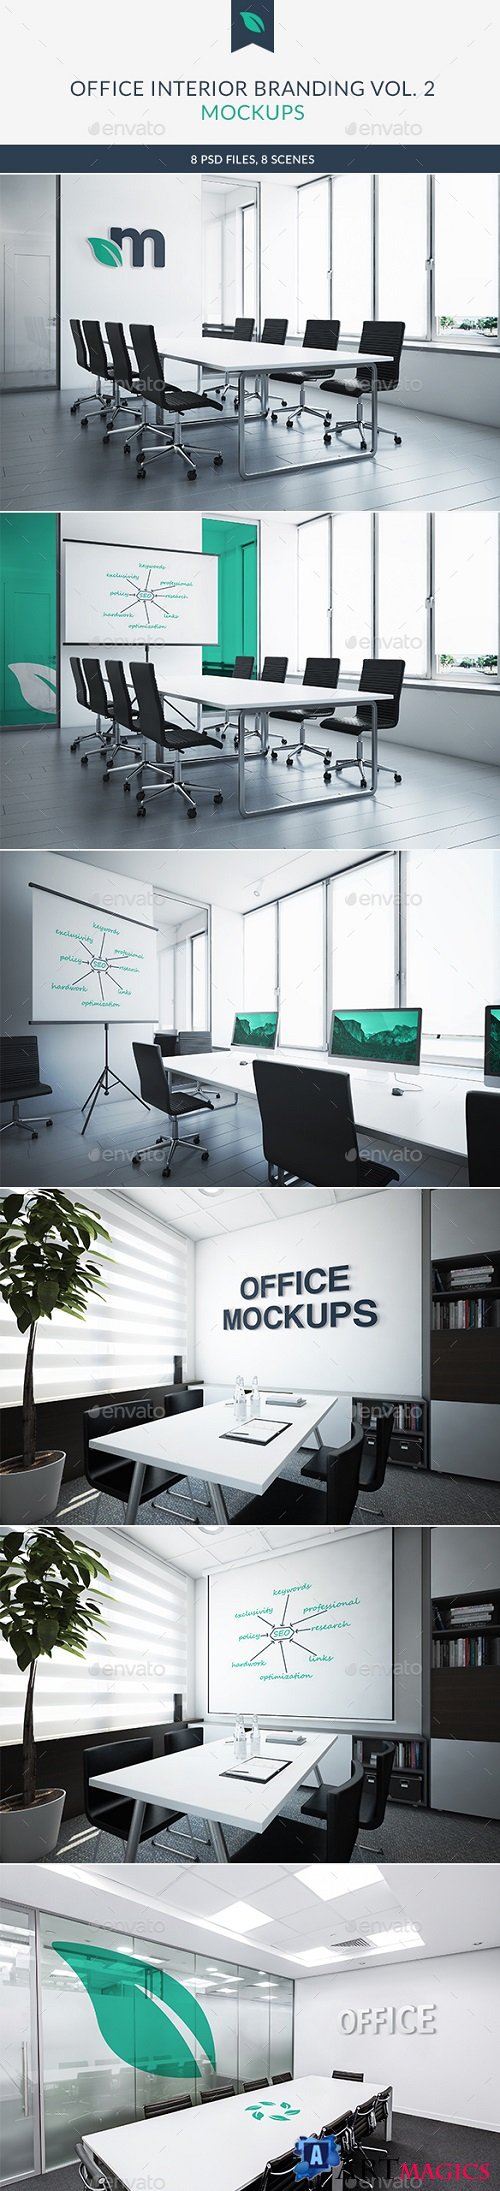 Office Interior Branding Mockups Vol2 21486903